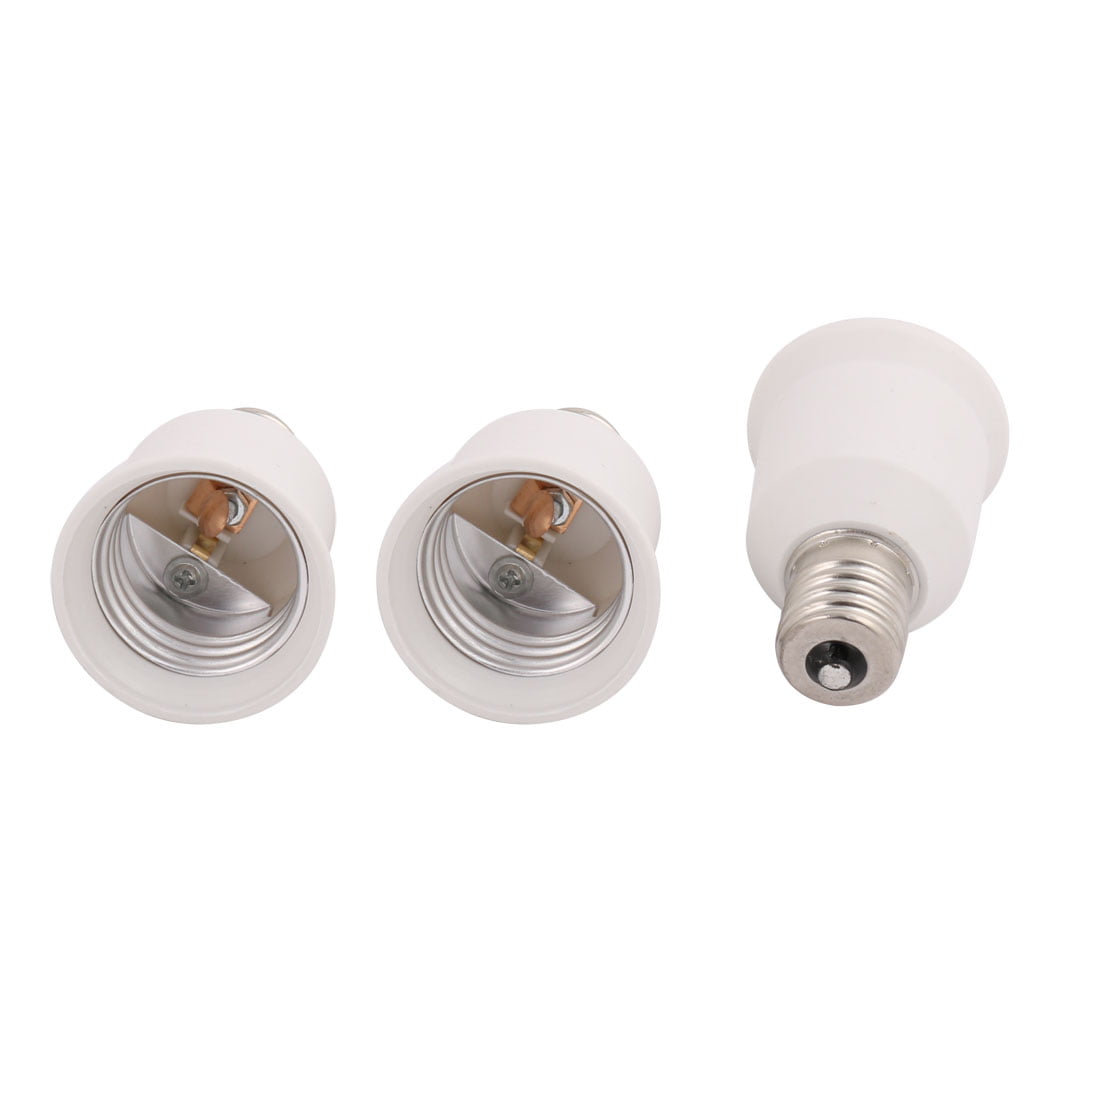 Lot5 E17 to E26 LED Light Lamp Bulb Base Adapter Converter SDL120026 